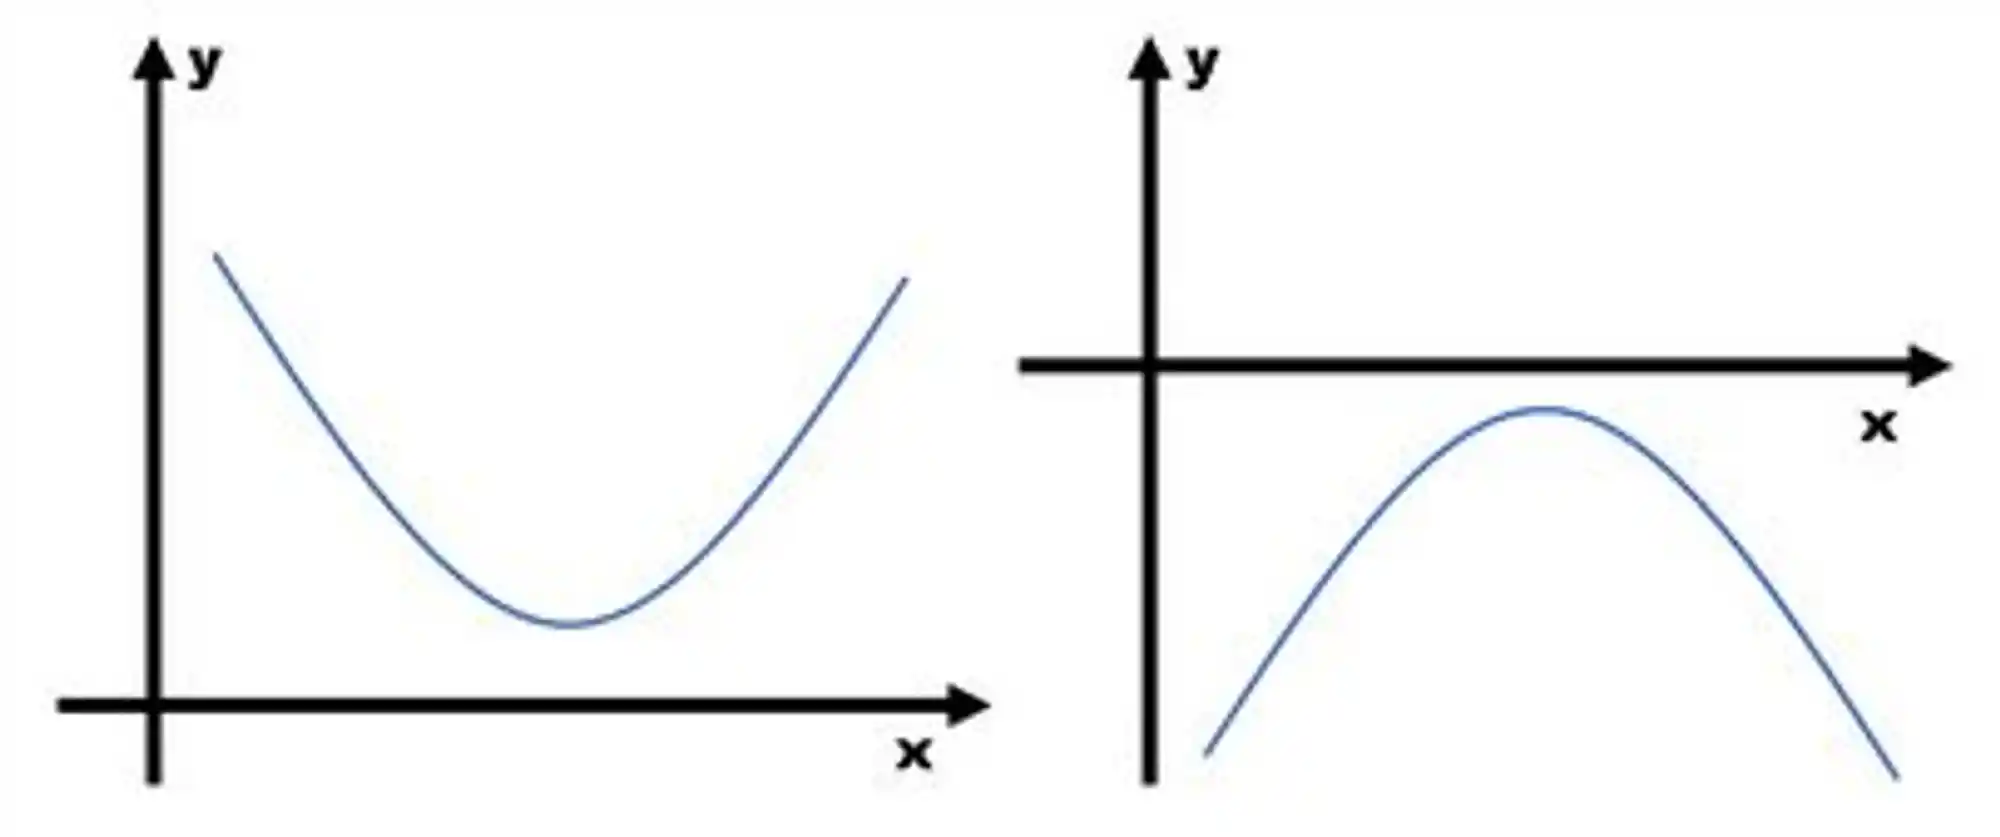 Interpretação gráfica para o delta negativo.